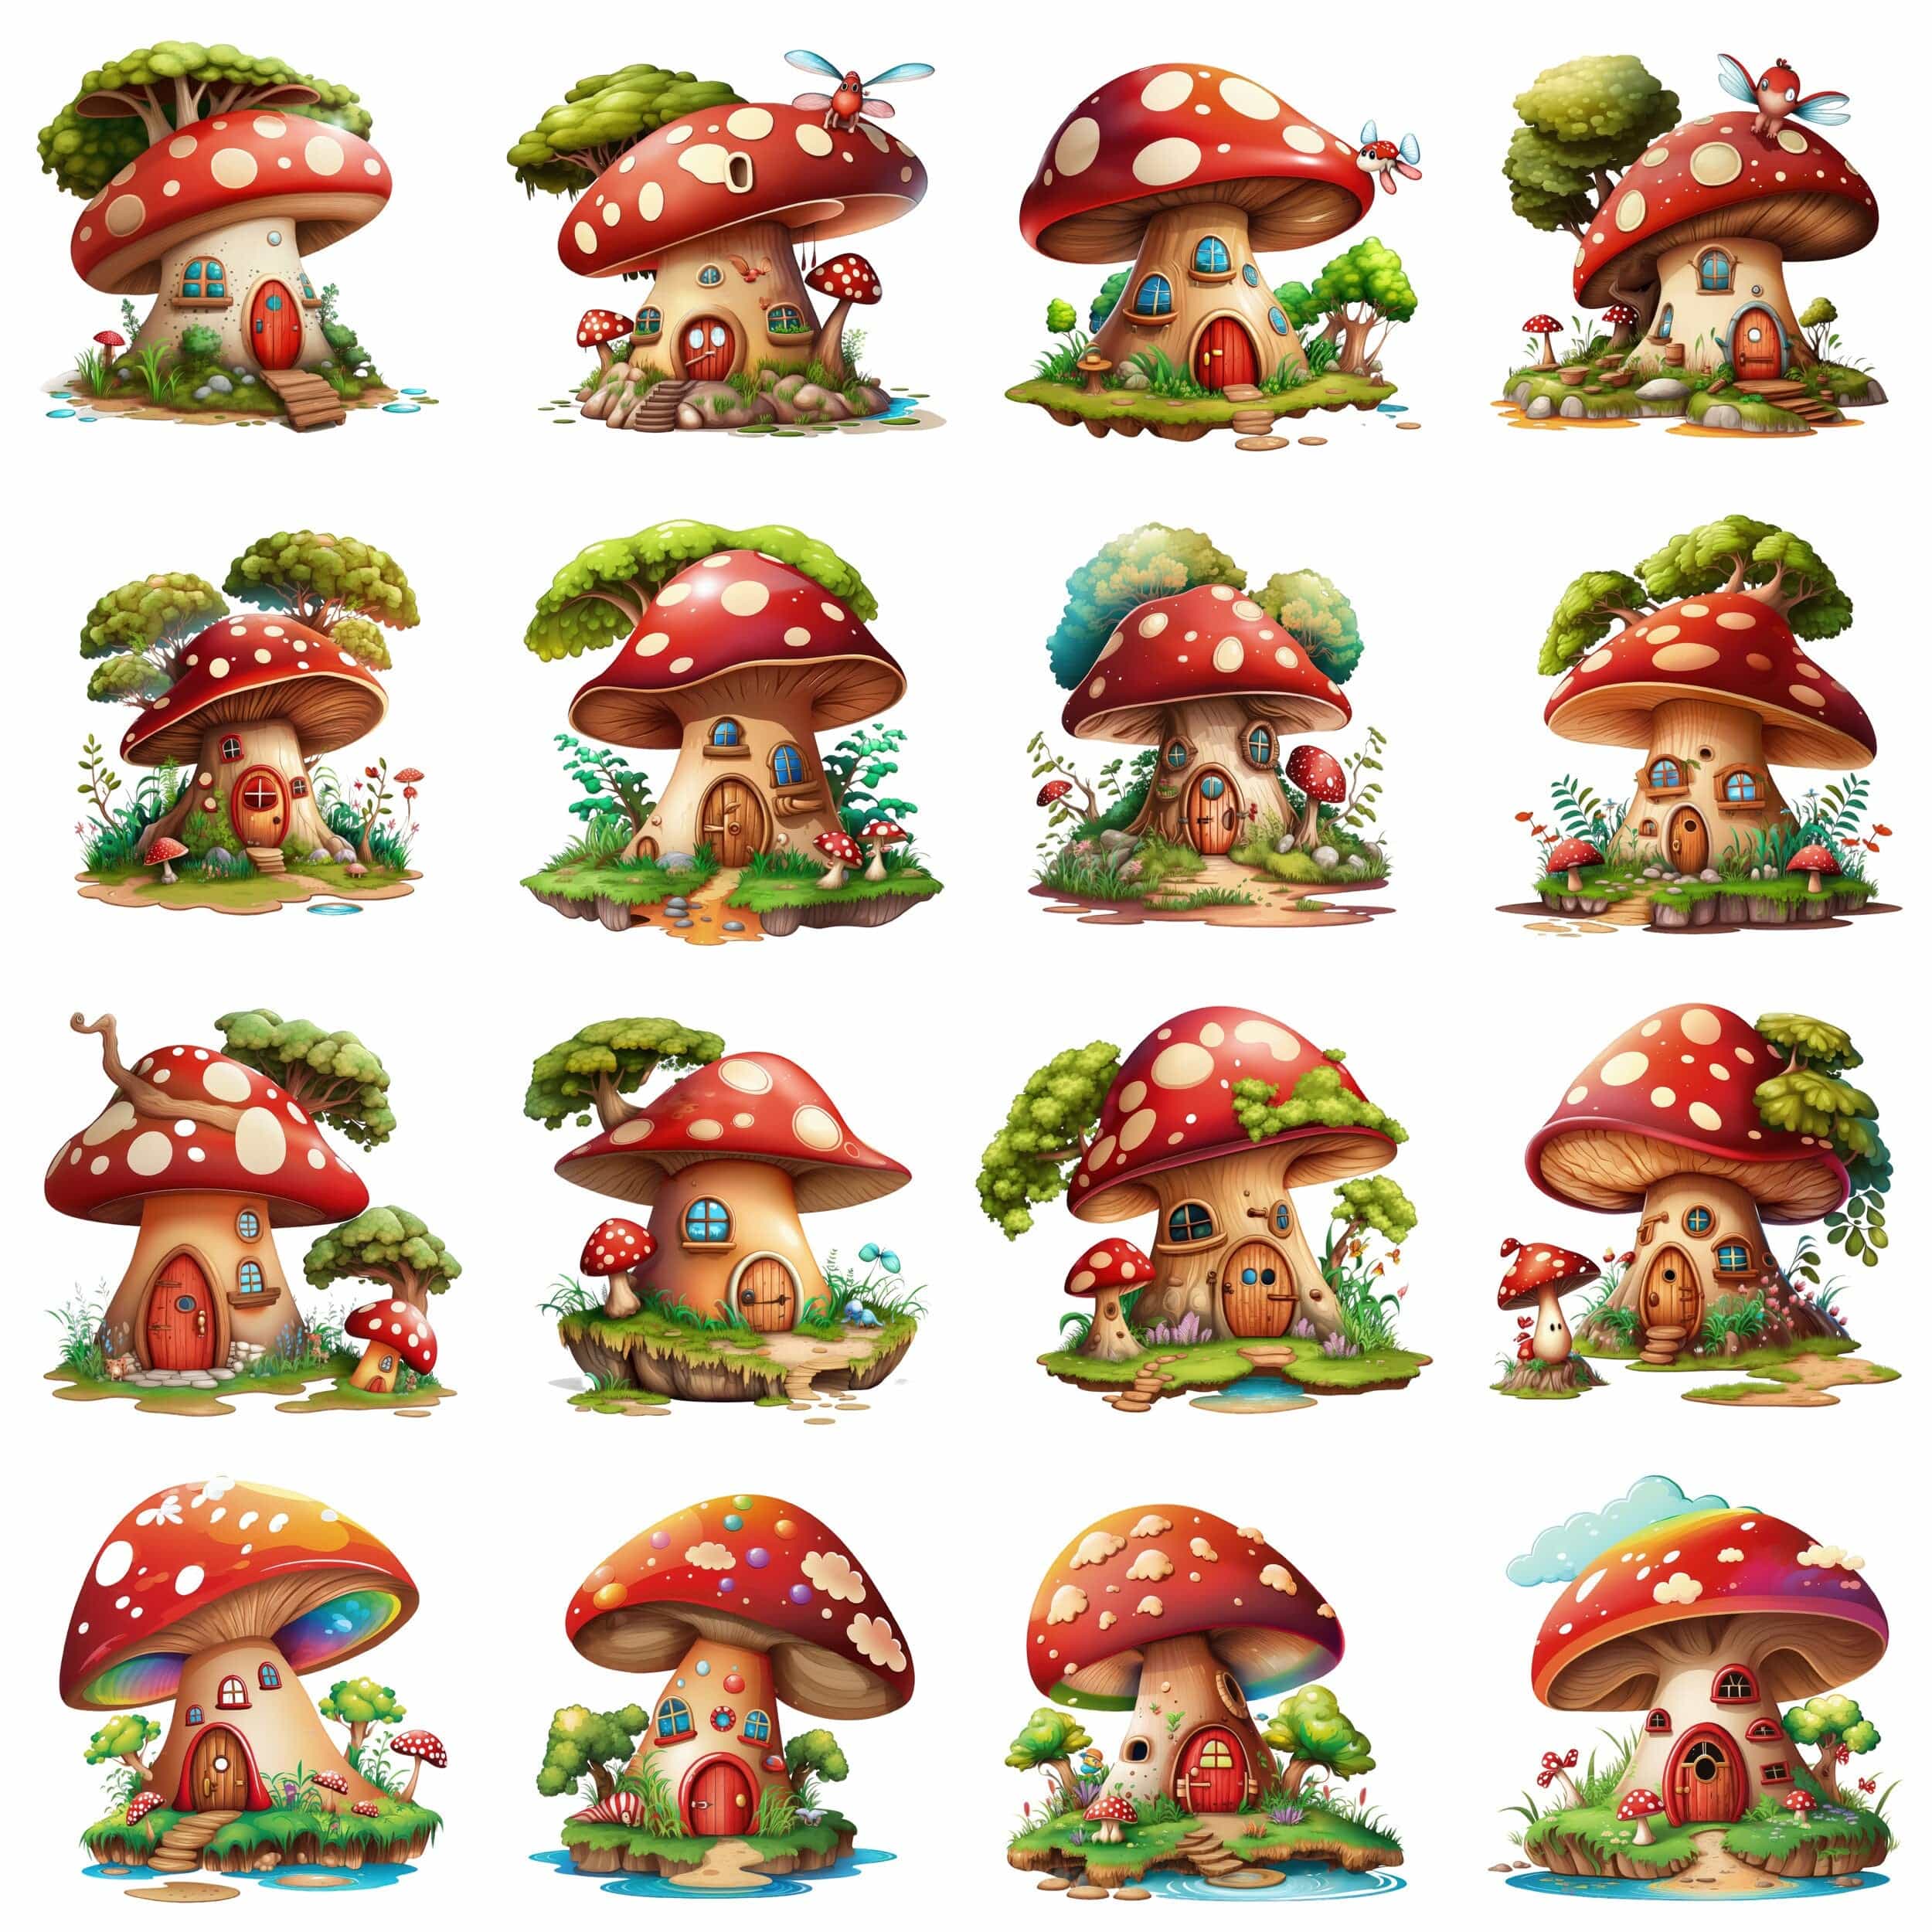 Mushroom House Bundle - 70 Transparent PNG Images, Sublimation, PNG, magical mushroom house, Toadstool House Clipart, Fantasy Mushrooms Digital Download Sumobundle